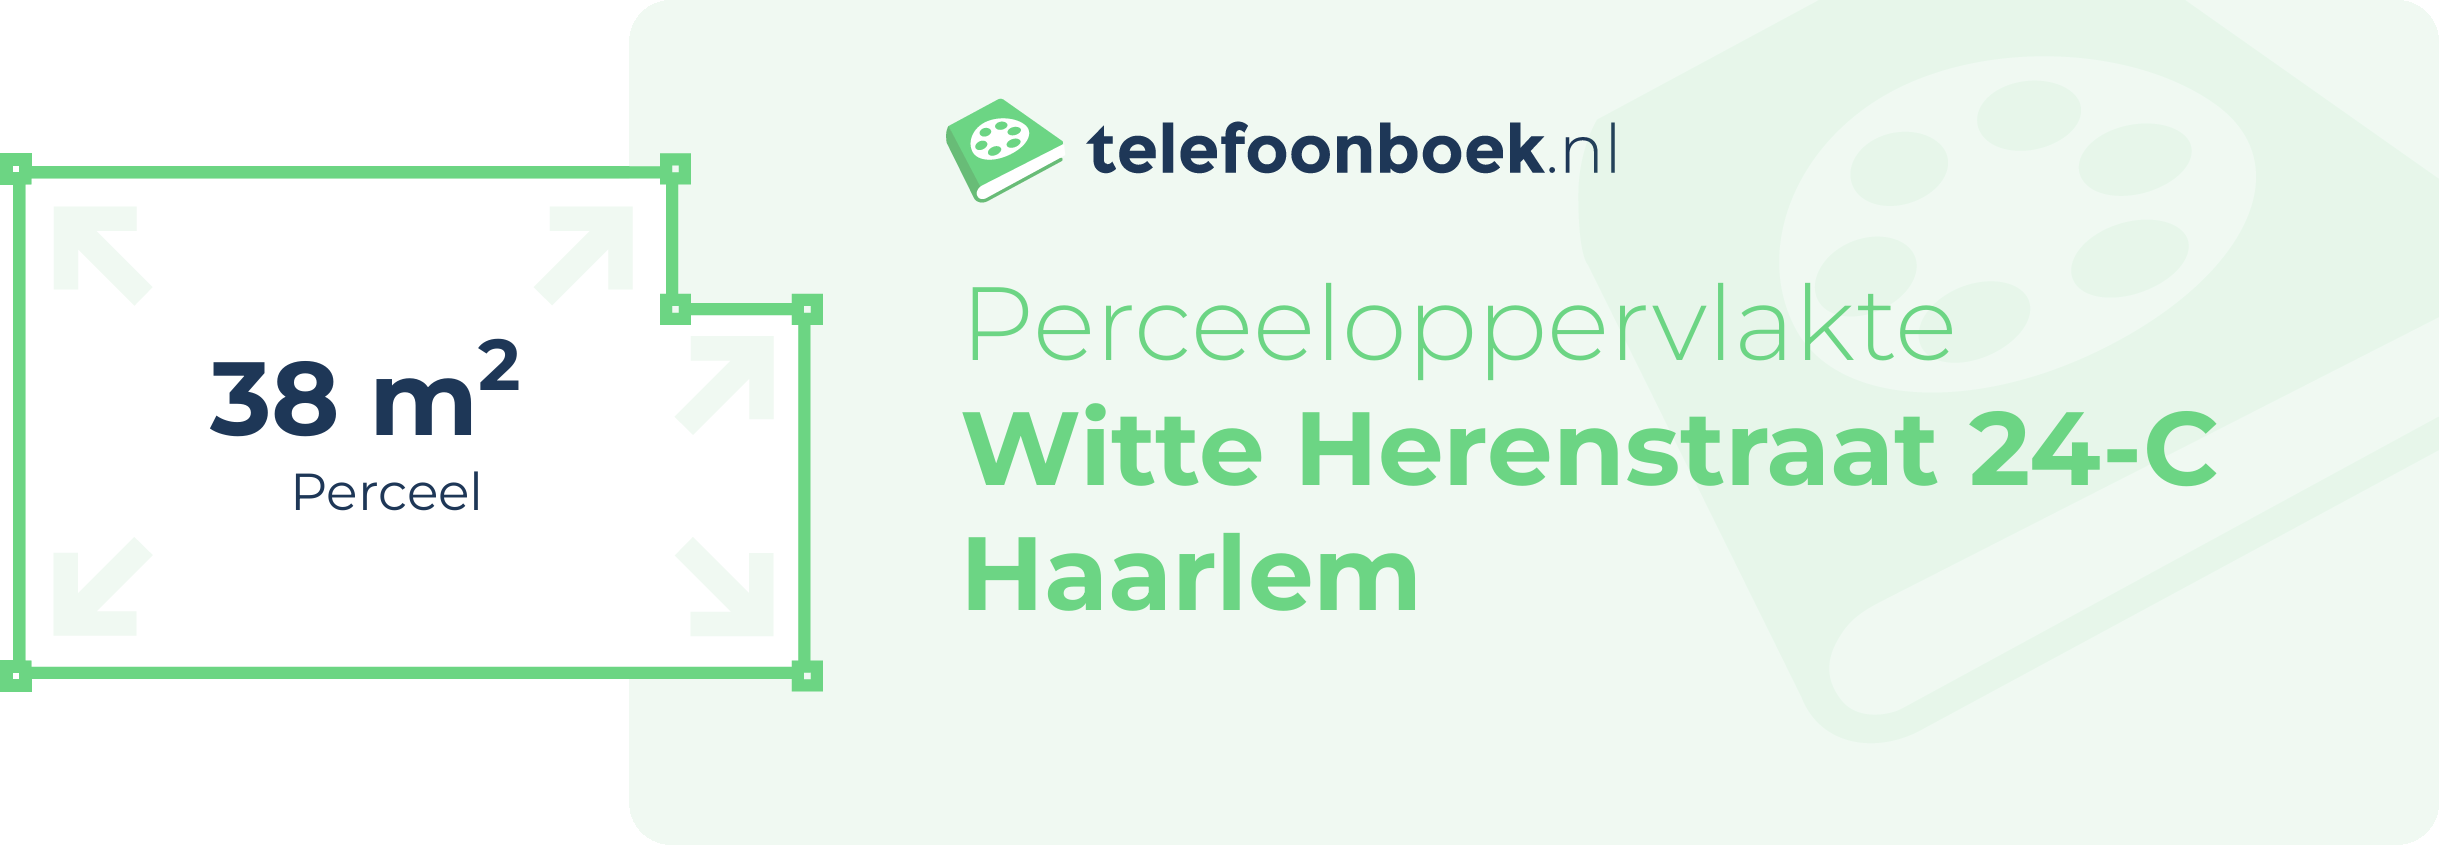 Perceeloppervlakte Witte Herenstraat 24-C Haarlem